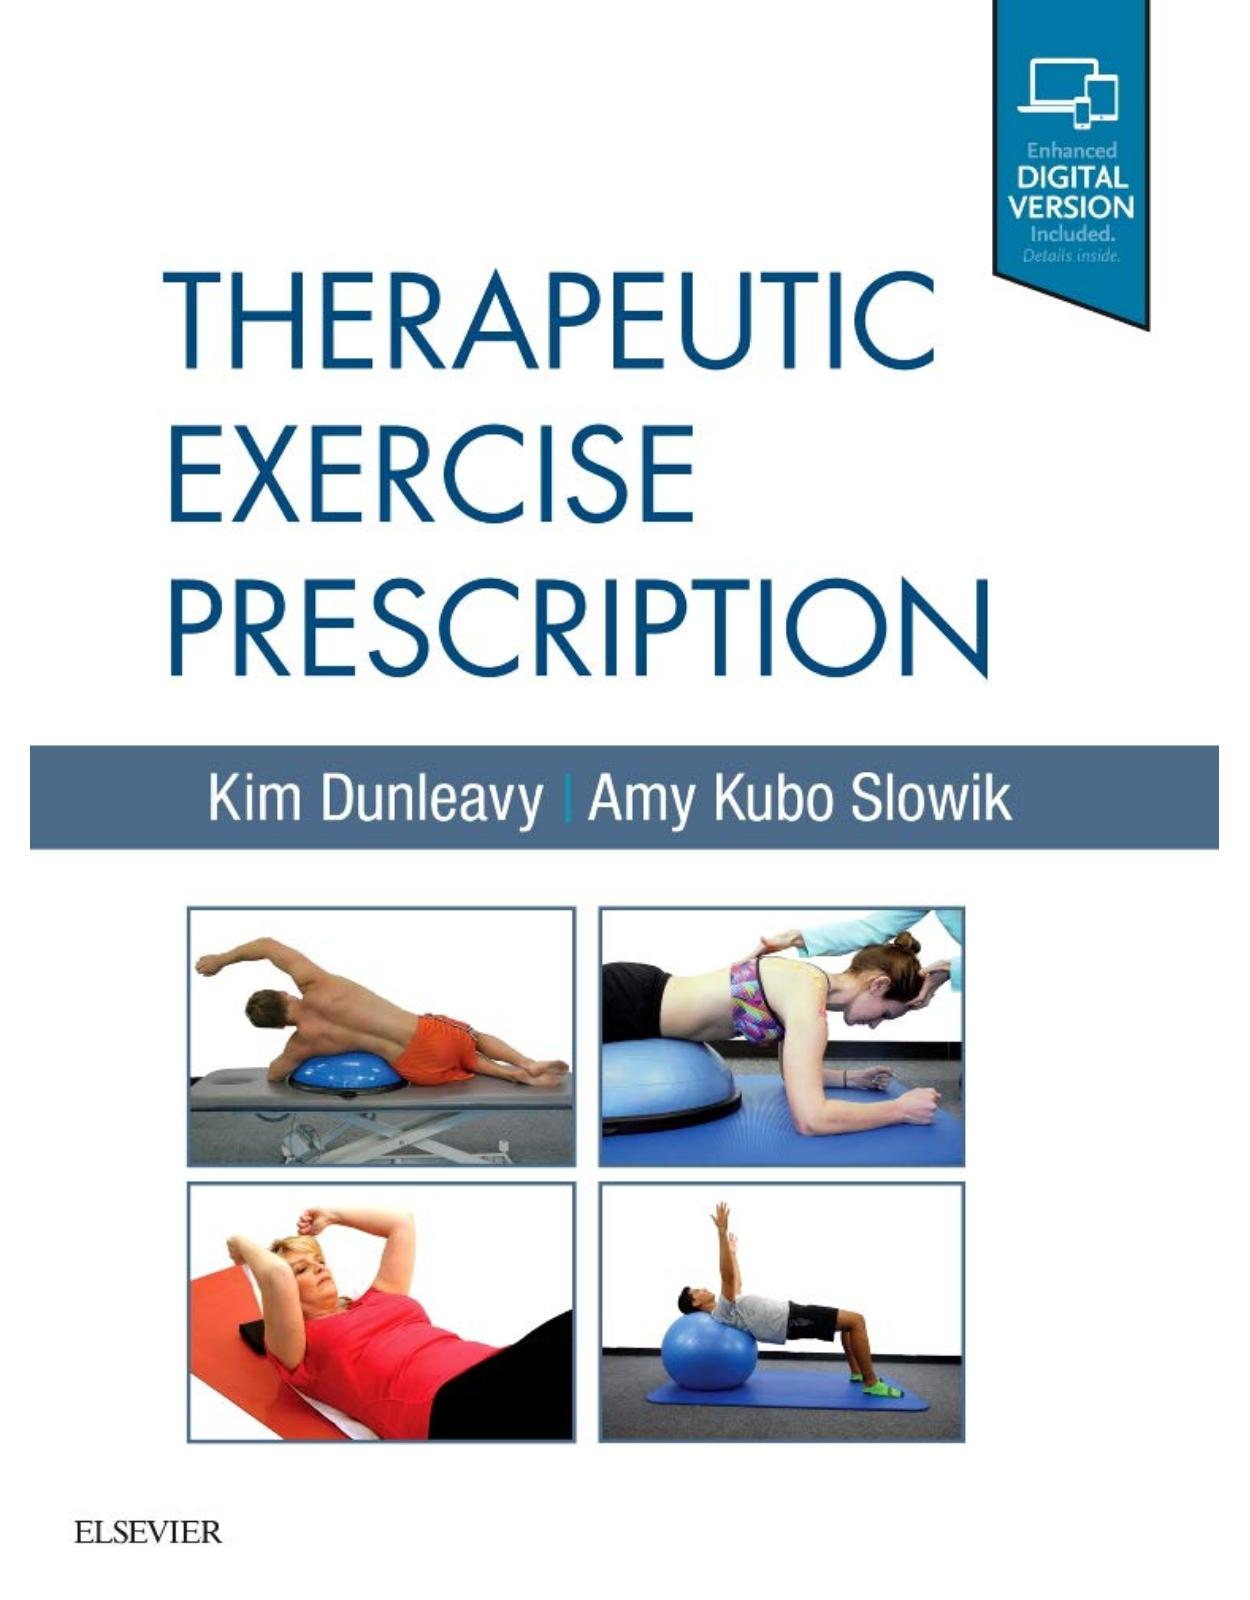 Therapeutic Exercise Prescription